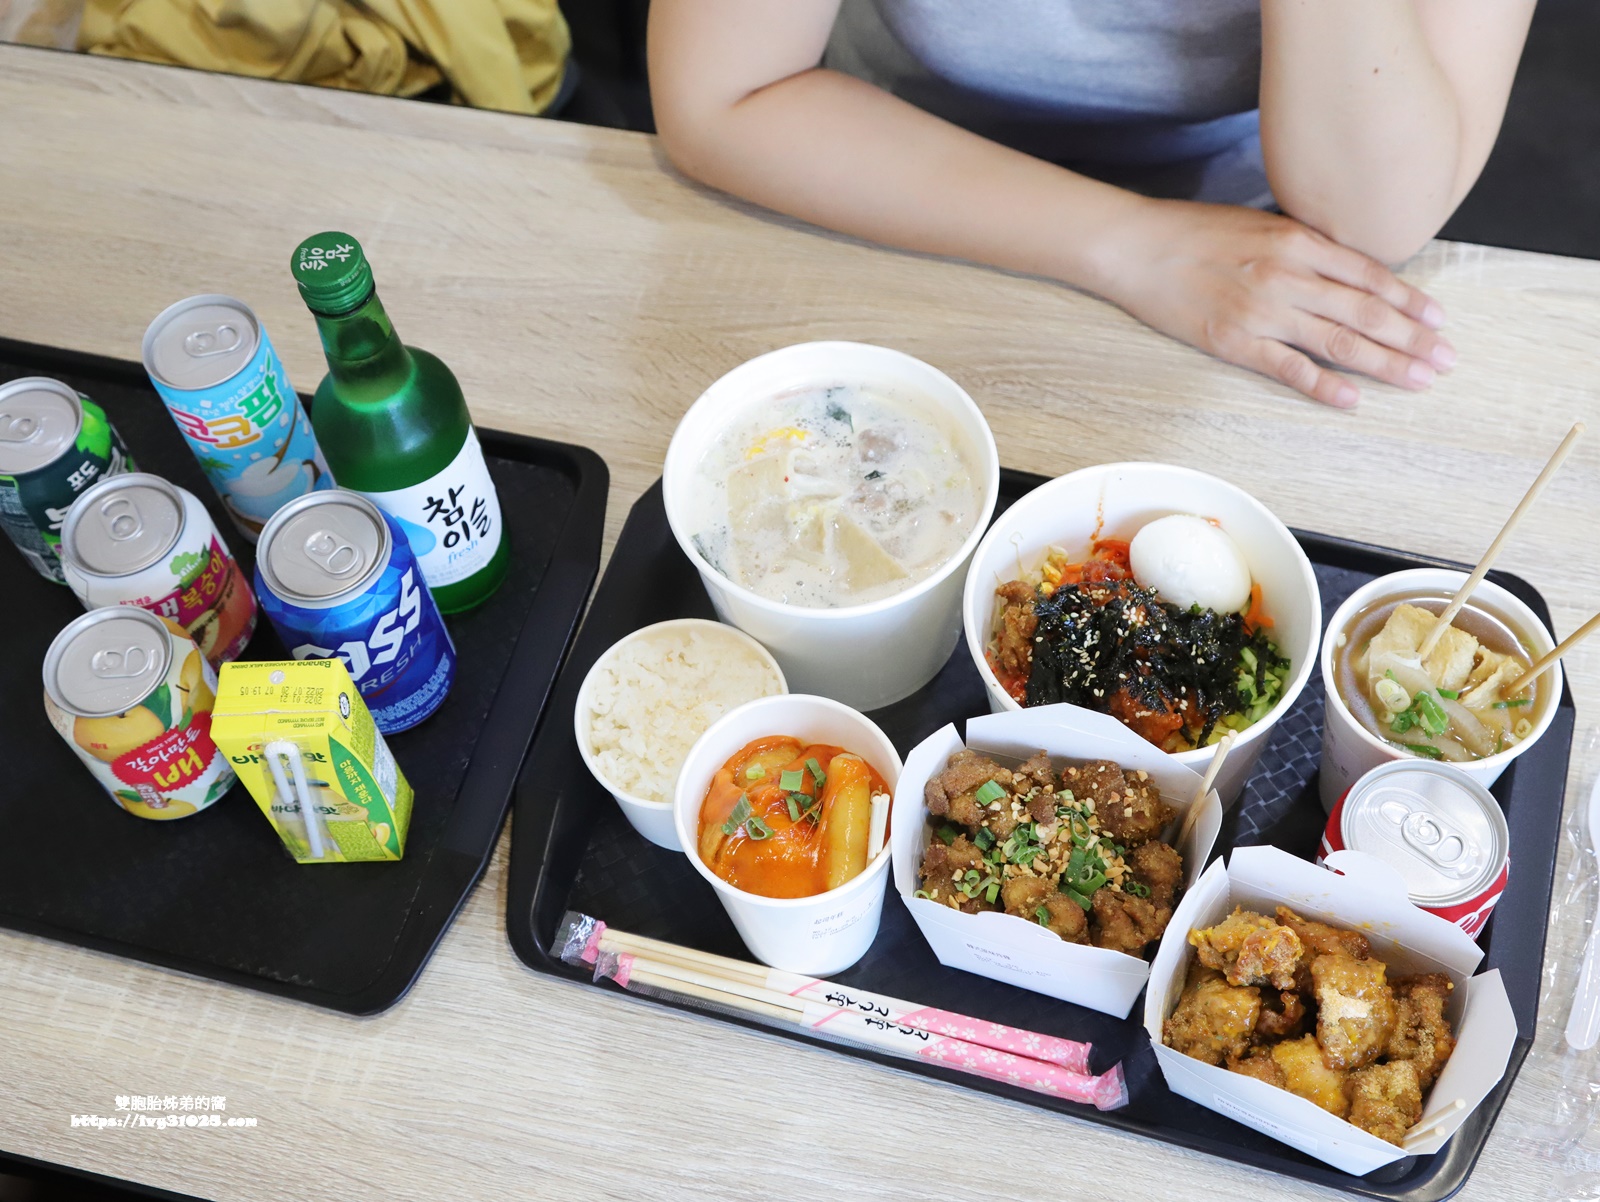 高雄楠梓美食 - 魚雞飯糕韓式食堂讓你吃到正統道地的韓國傳統小吃美食